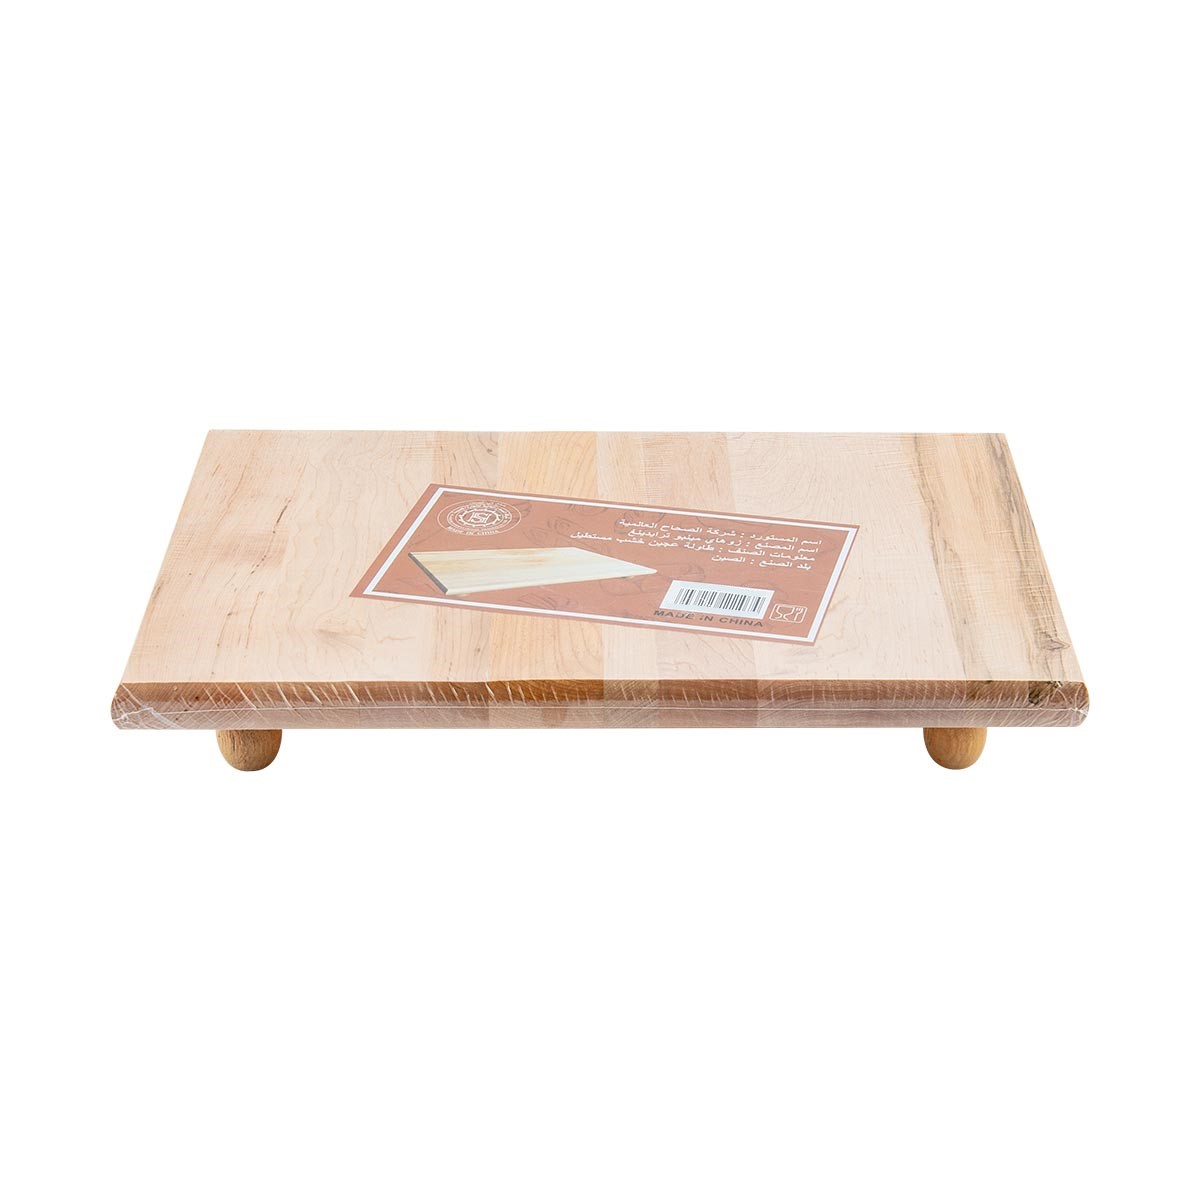 طاولة خشبية لفرد العجين مستطيل مقاس 39 × 27 سم LT30197